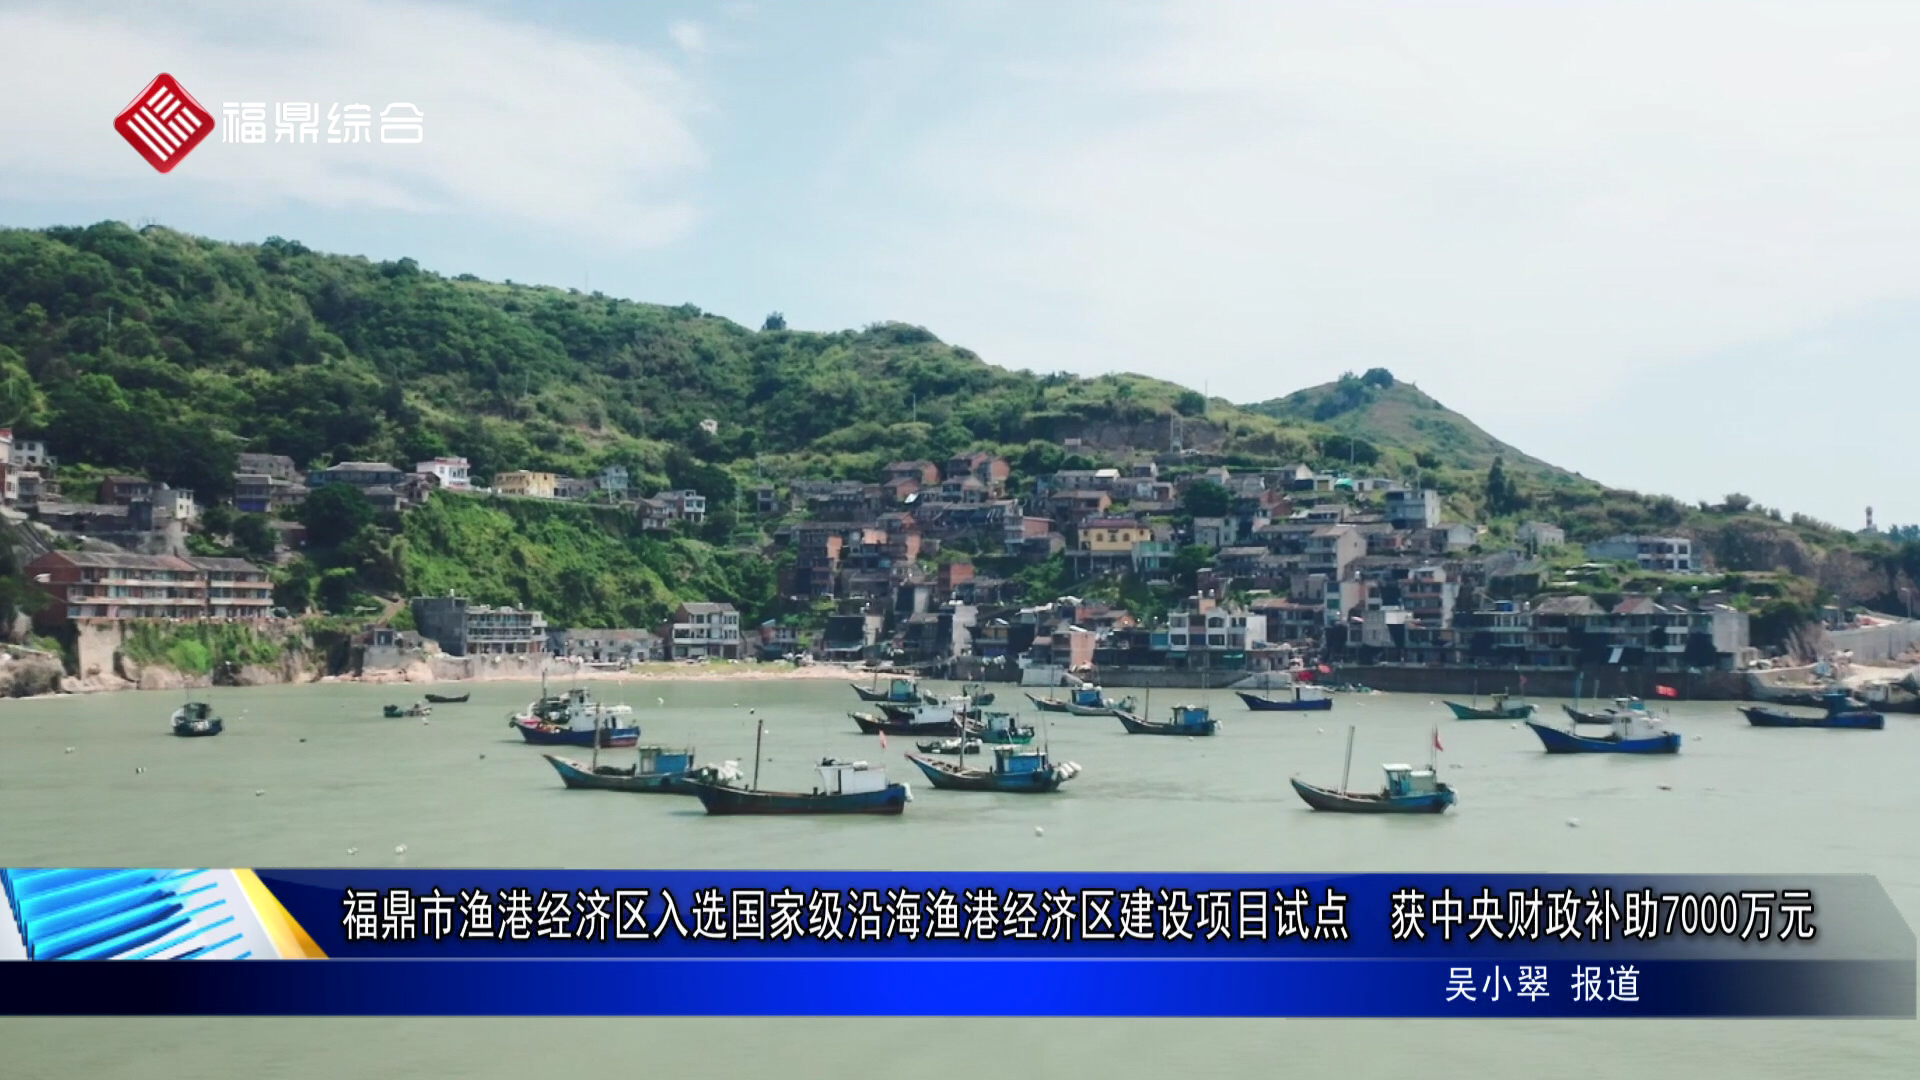 福鼎市渔港经济区入选国家级沿海渔港经济区建设项目试点  获中央财政补助7000万元